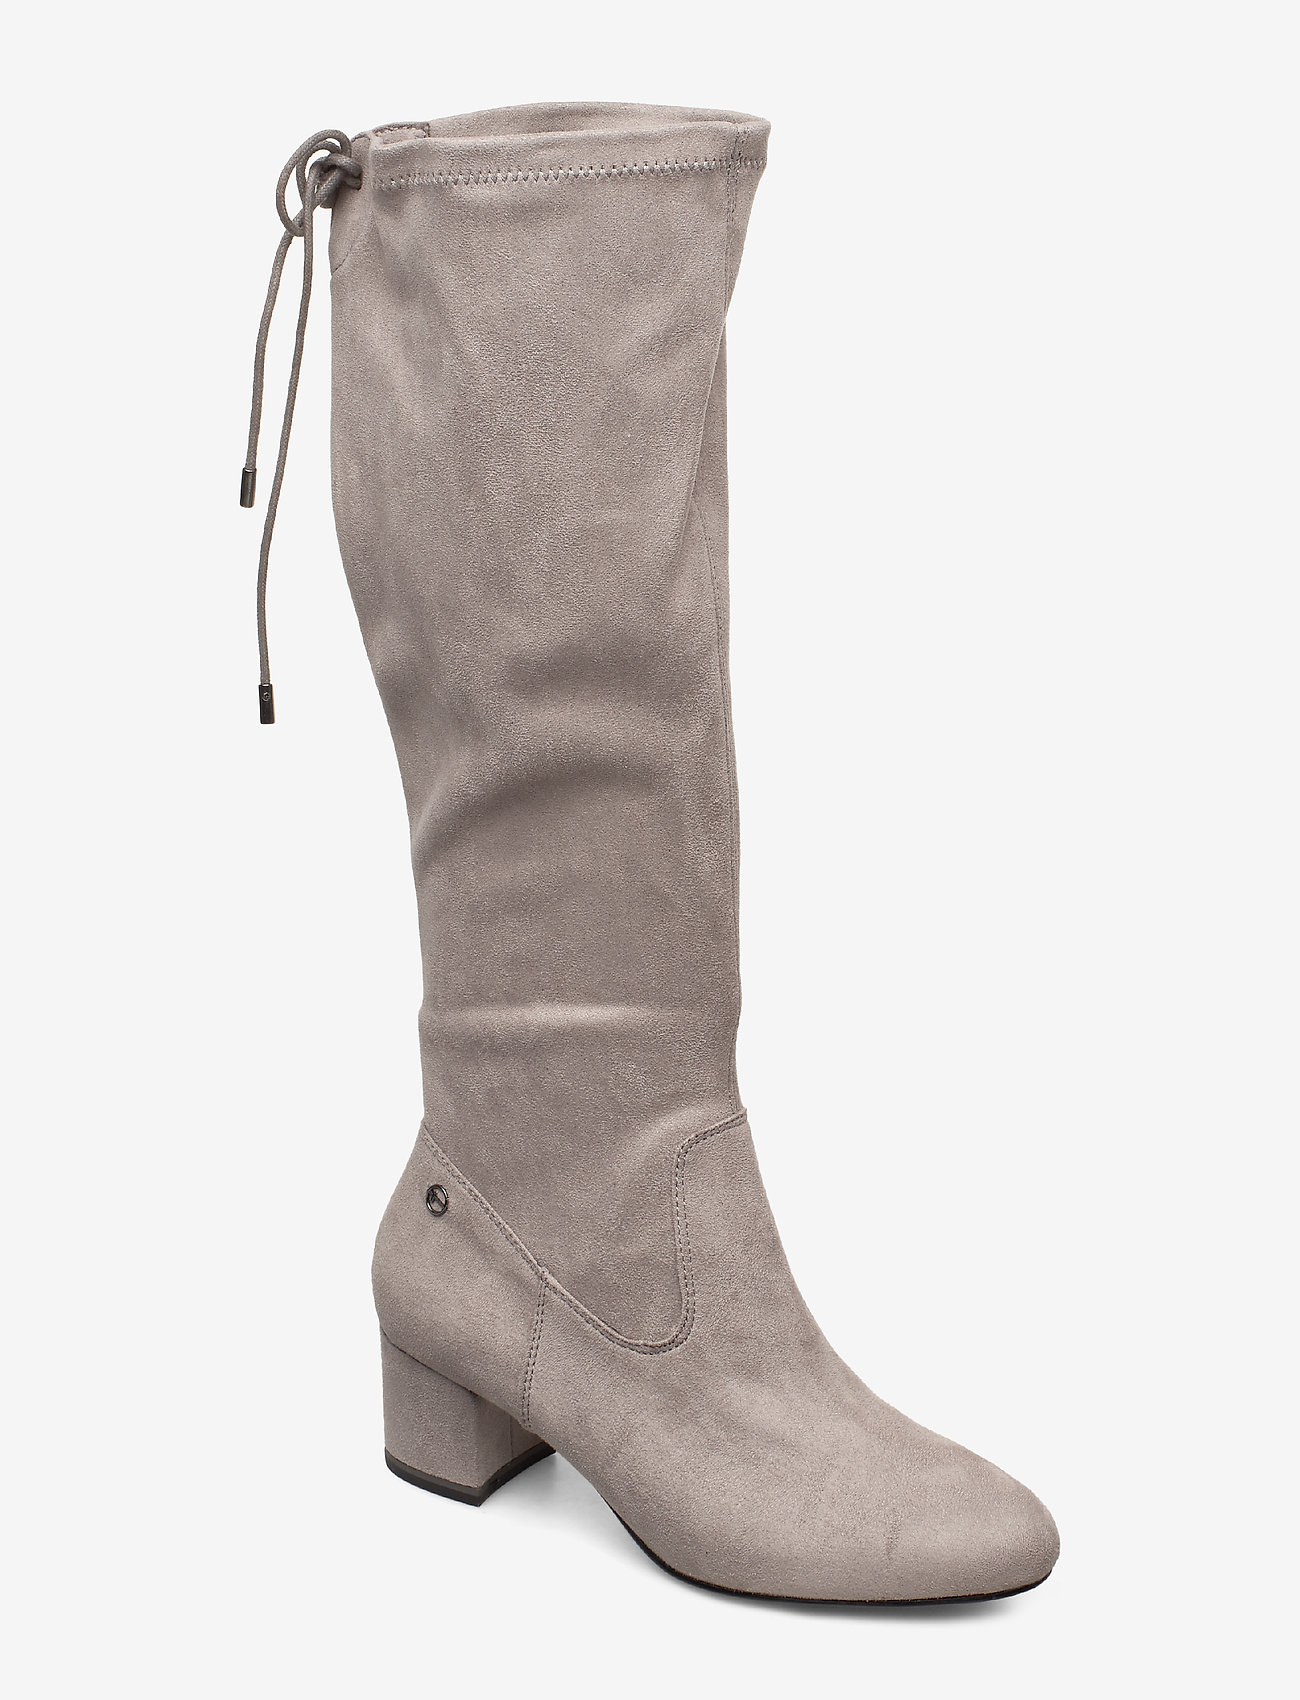 light grey knee high boots